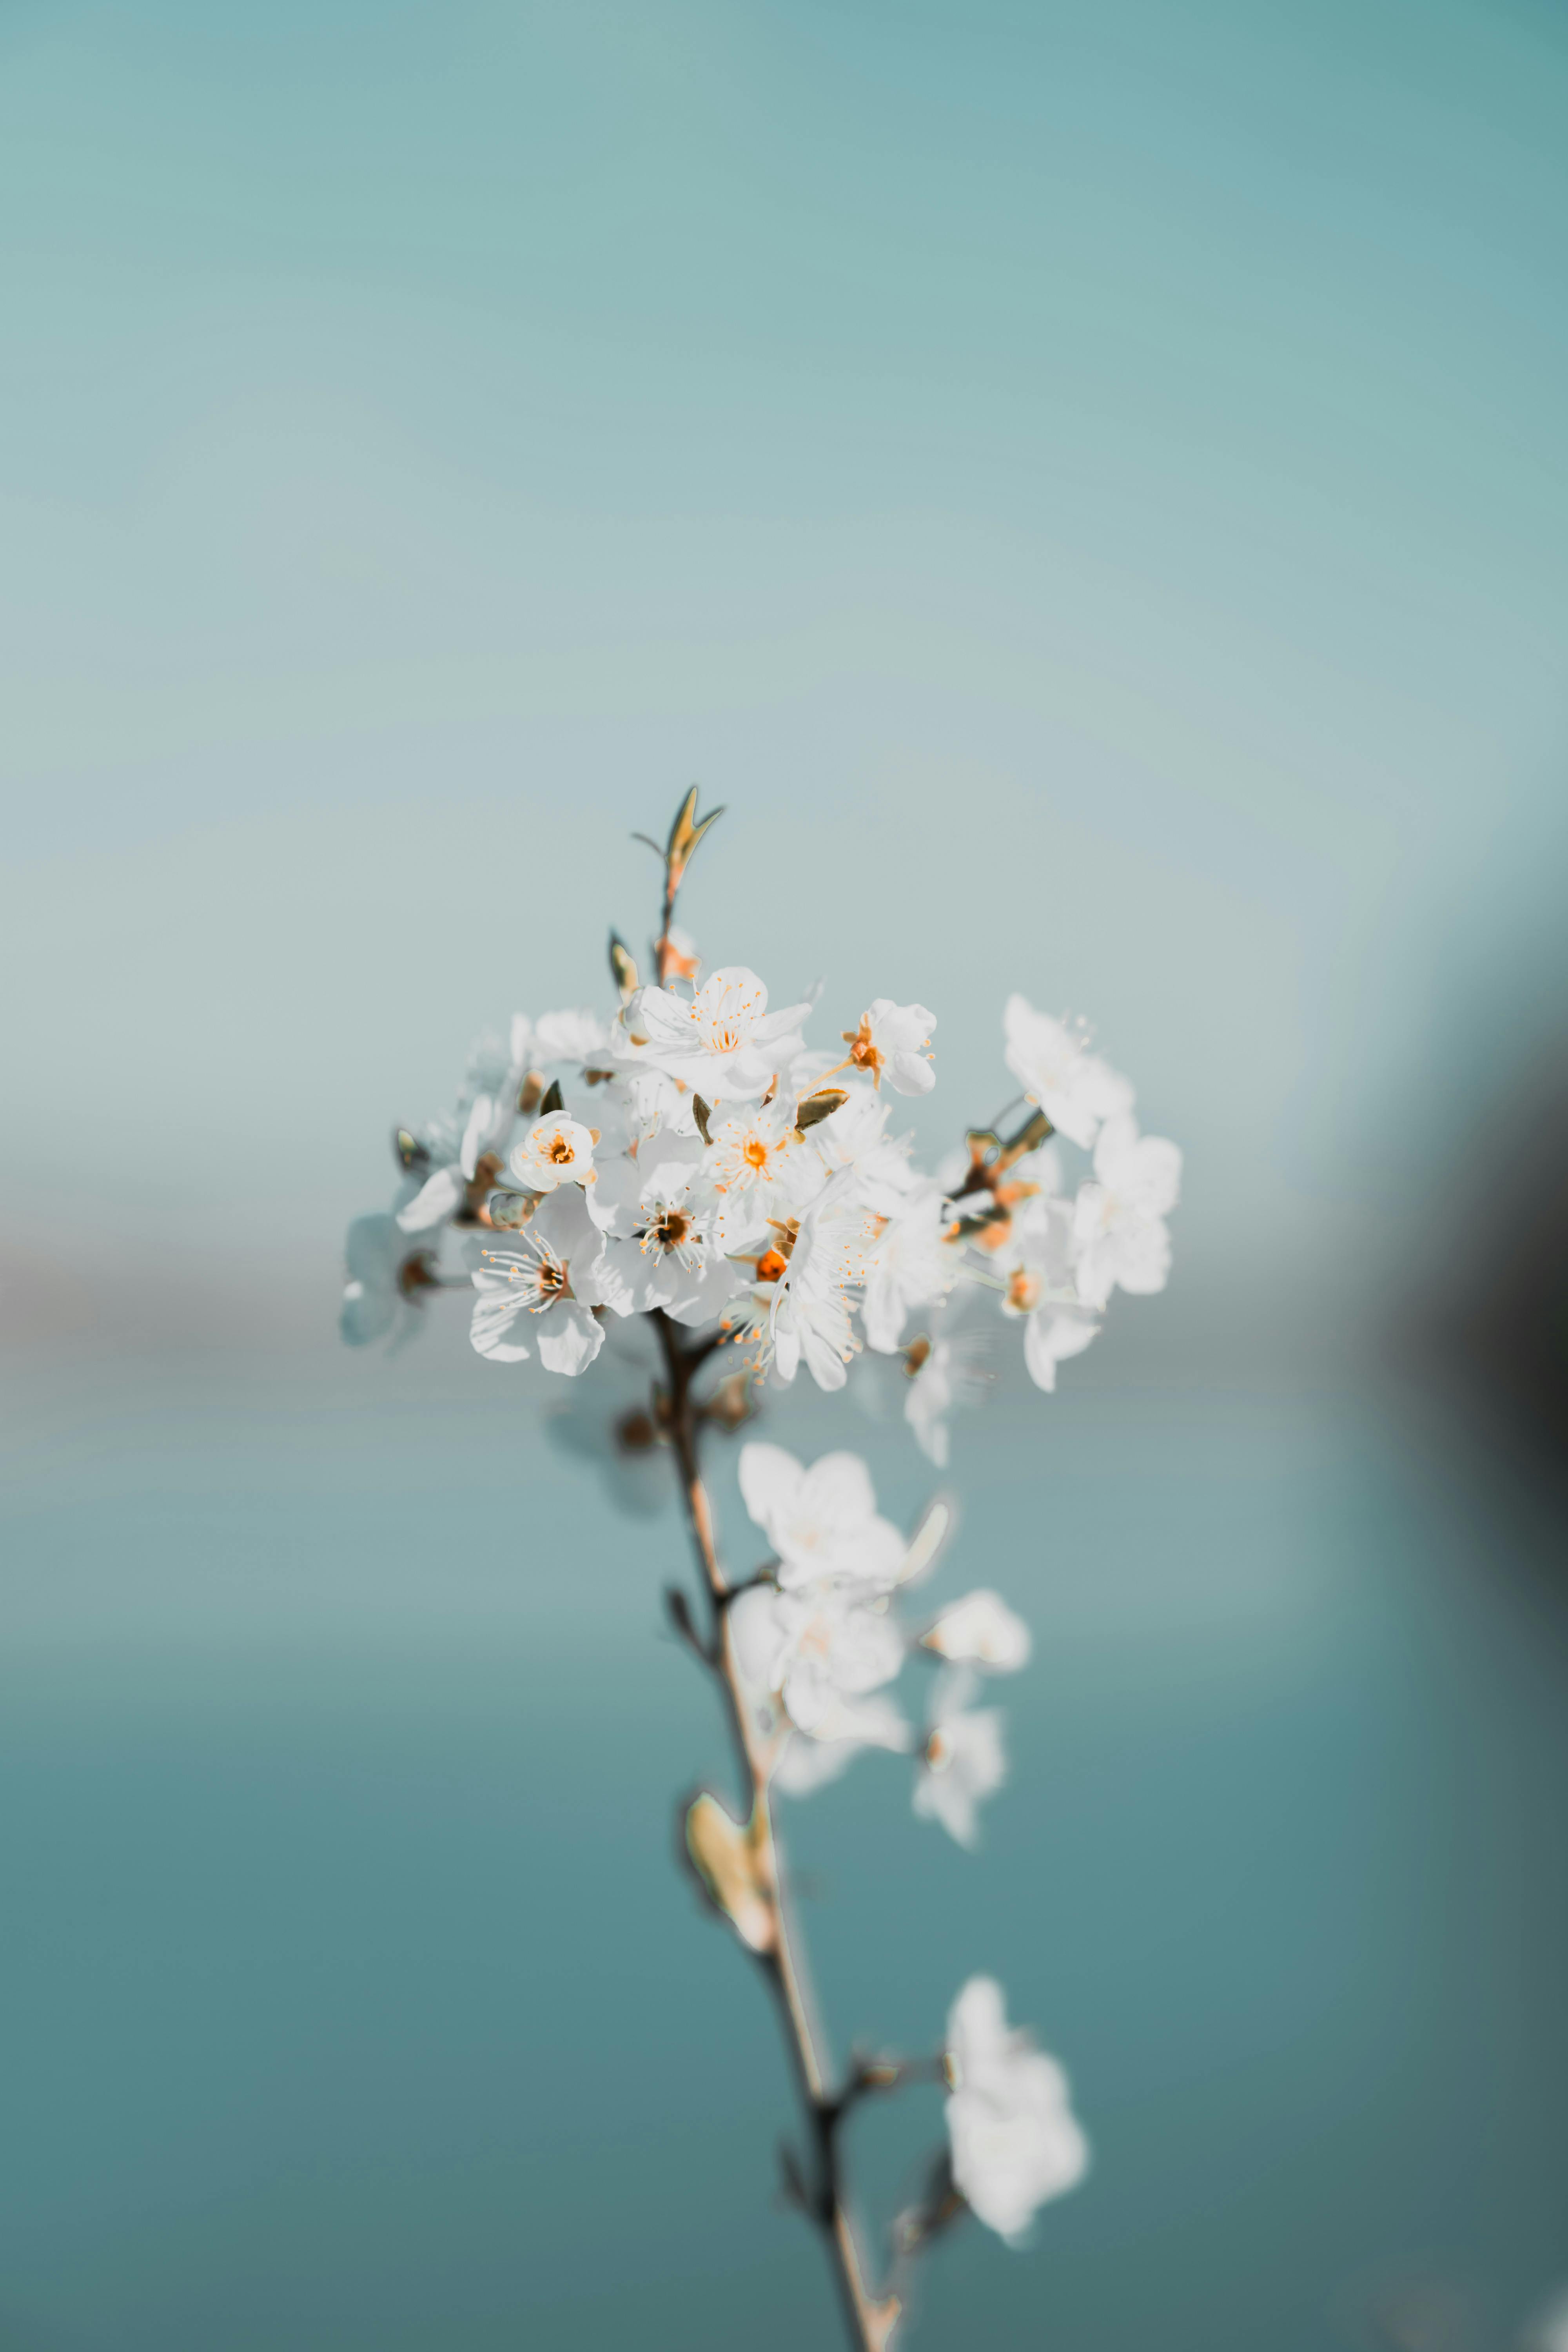 Làm mát mùa hè nắng nóng, những bông hoa trắng nhỏ tinh khôi như một lời hứa ngọt ngào. Hãy để bức ảnh này đem lại giây phút thư giãn cho bạn.